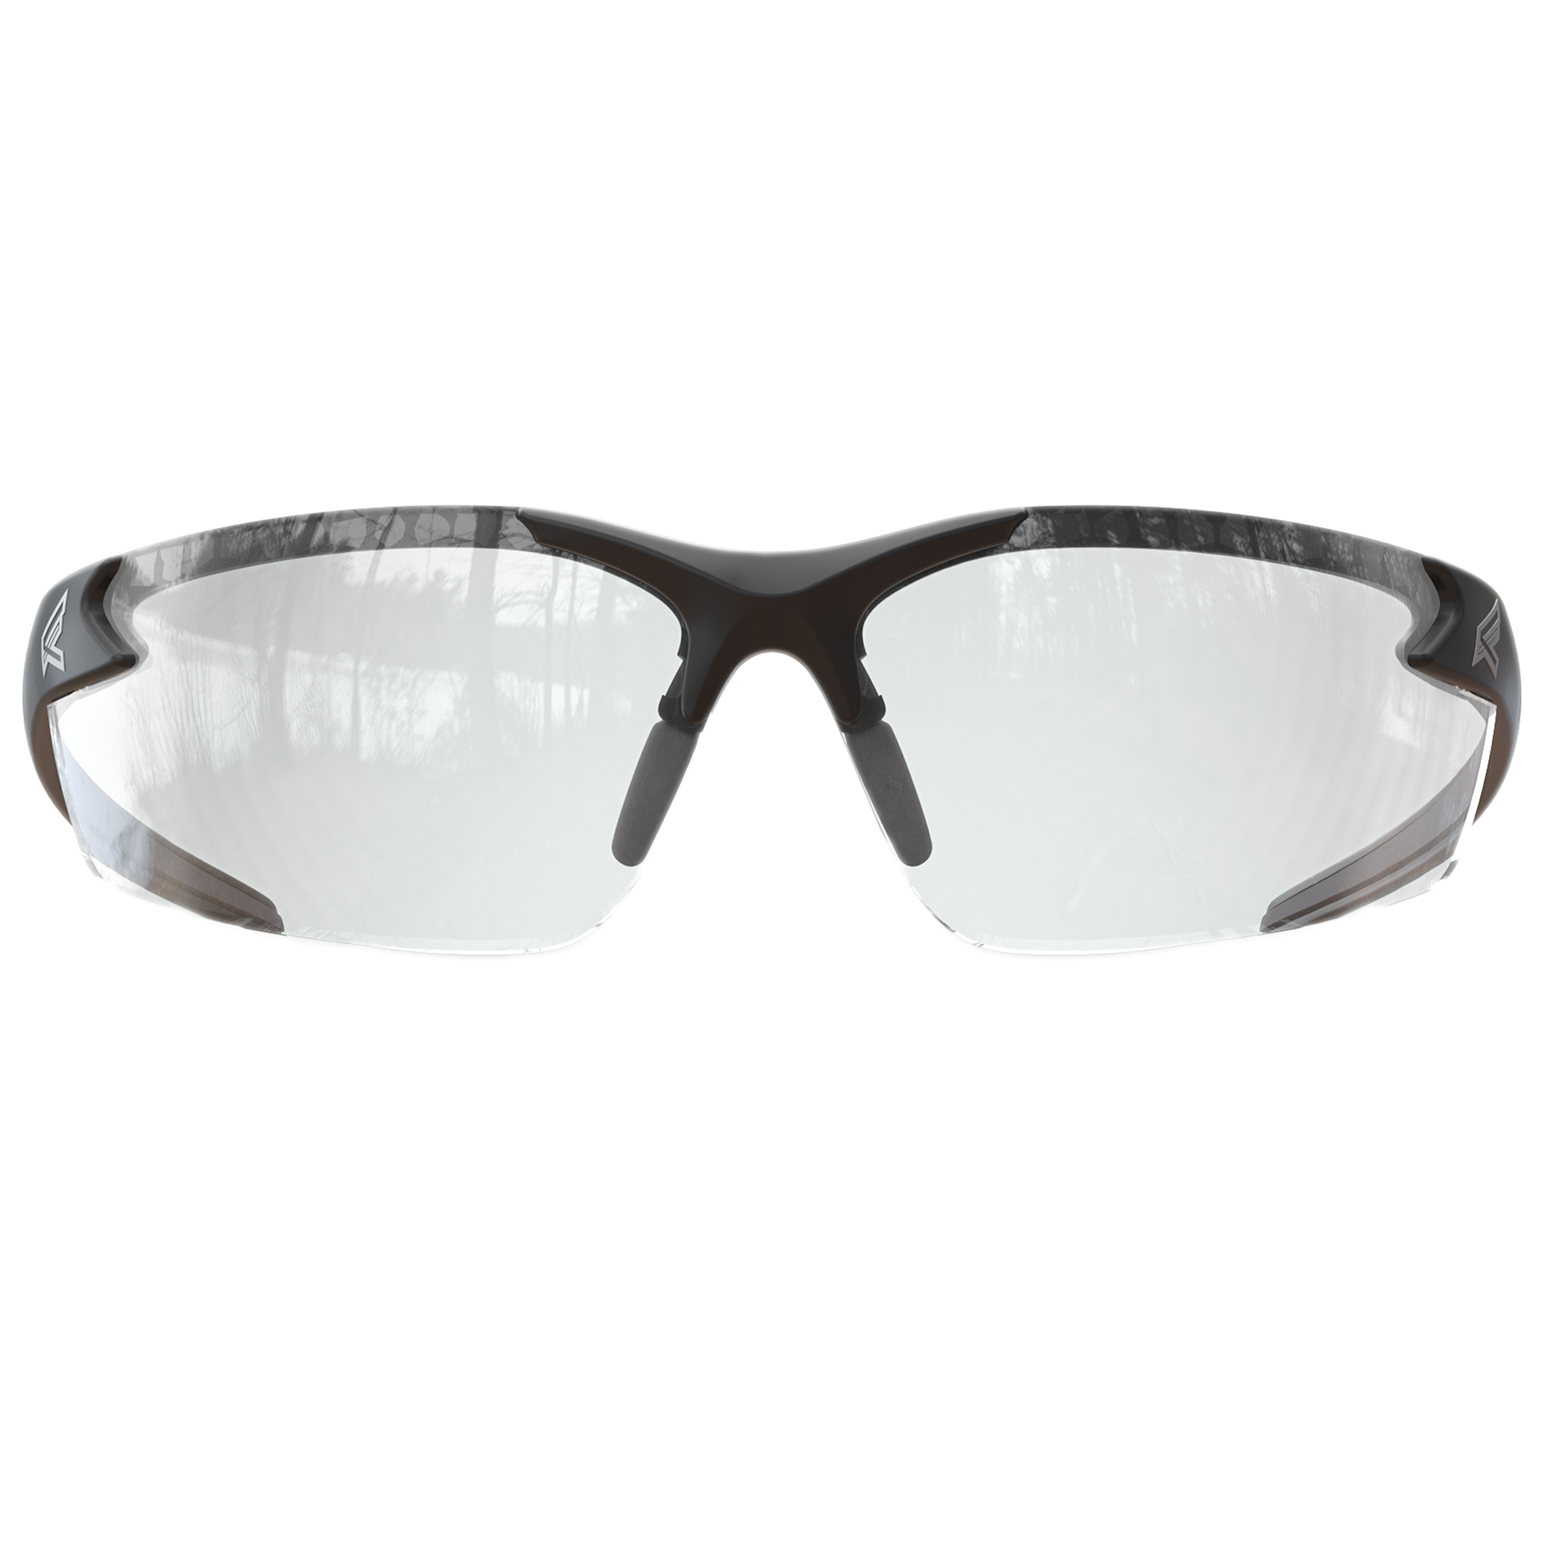 Edge Dz111 G2 Zorge G2 Safety Glasses Black Frame Clear Lens Full Source